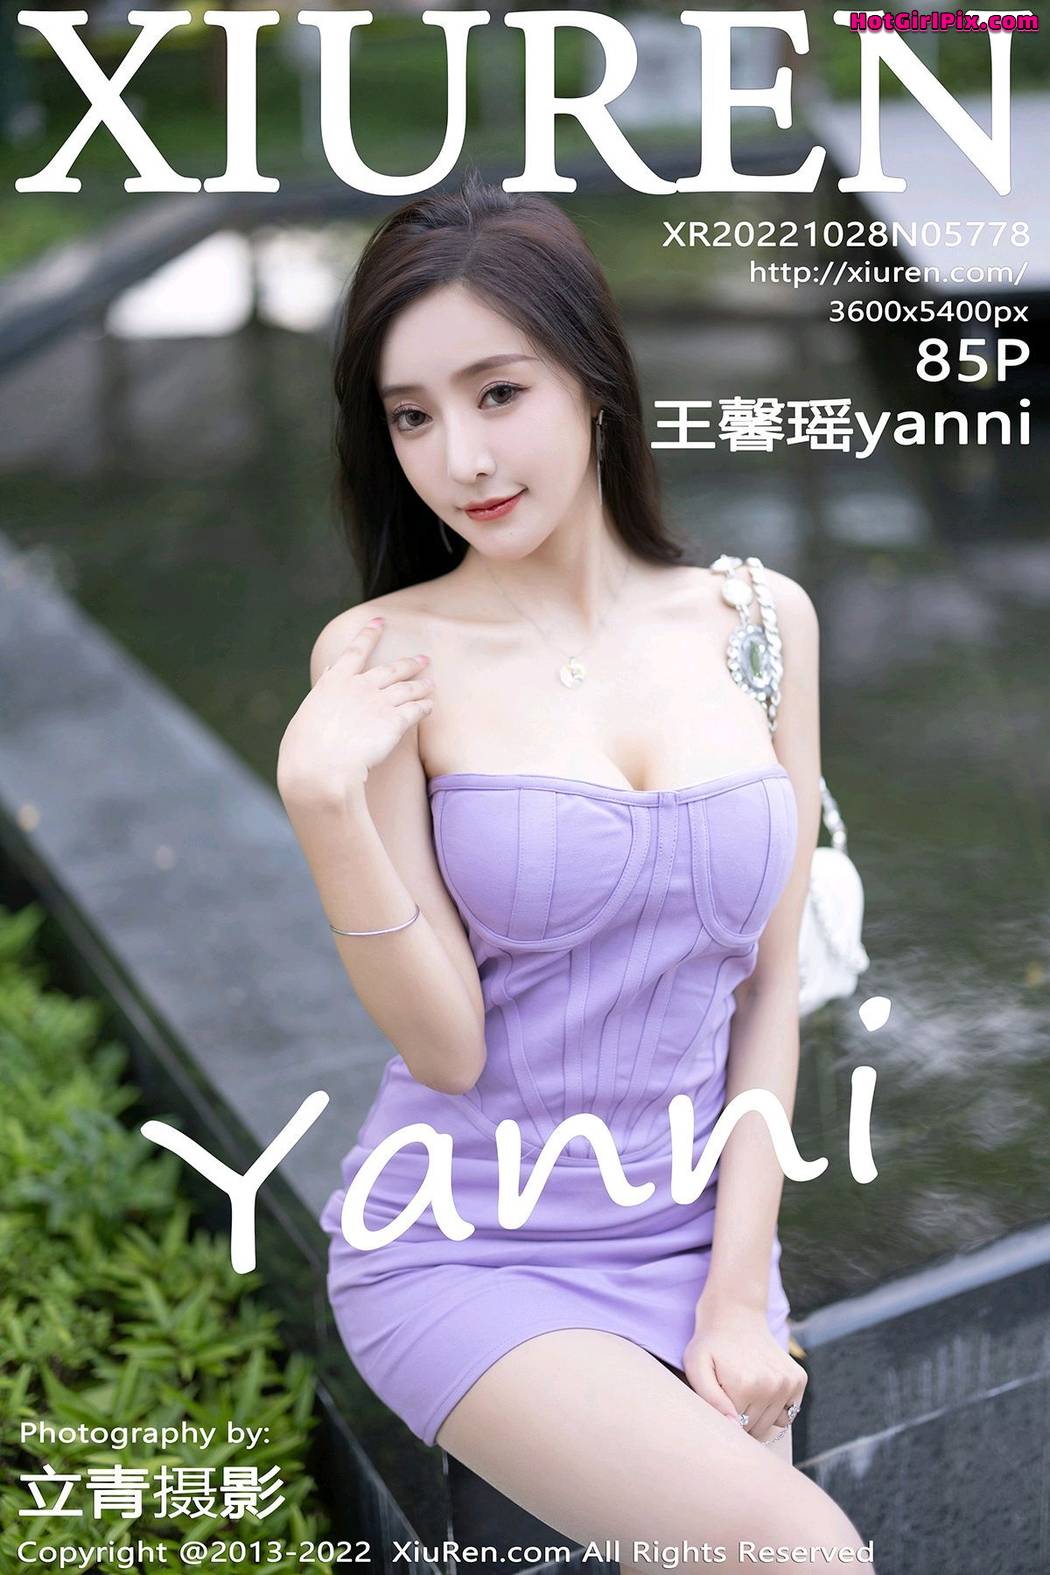 [XIUREN] No.5778 Wang Xin Yao 王馨瑶yanni Cover Photo